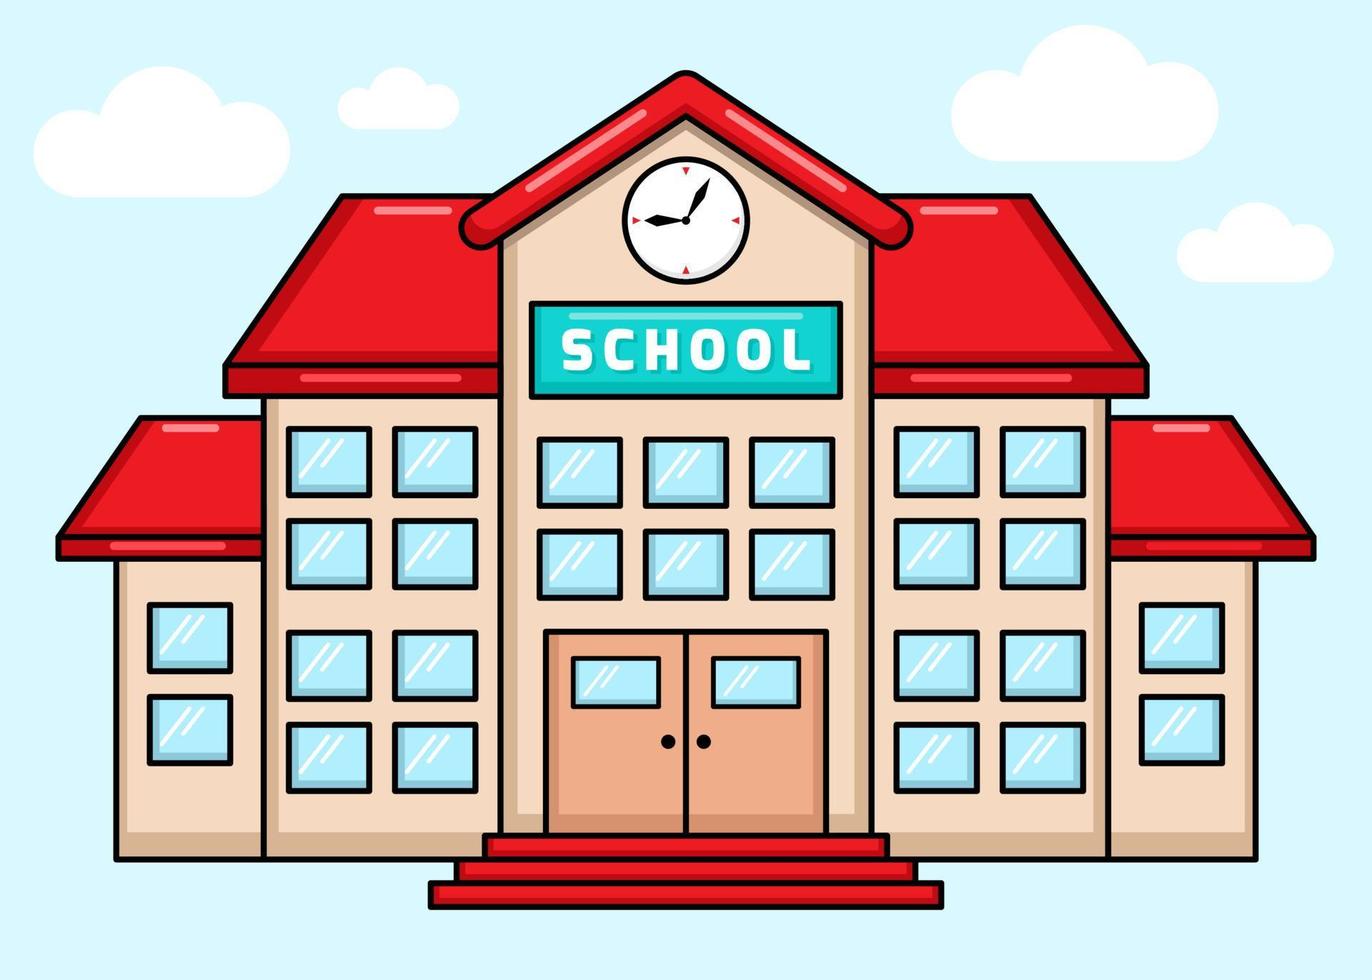 Vektor des bunten Schulgebäudes mit Cartoon-Stil. zurück zur Schule.